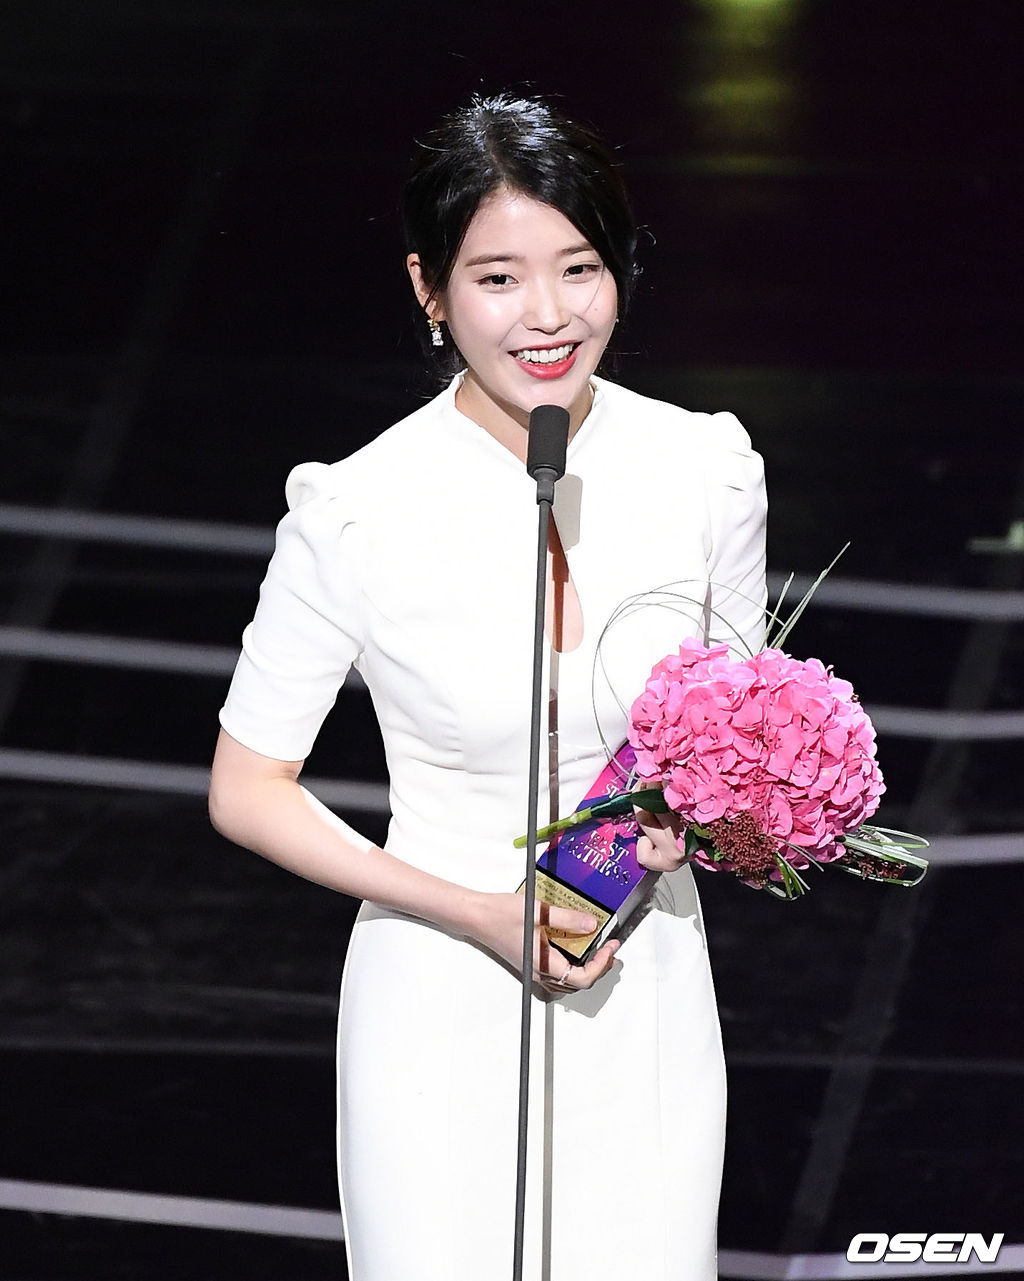 중편드라마 여자 최우수연기상을 수상한 배우 이지은이 소감을 말하고 있다.181013/sunday@osen.co.kr